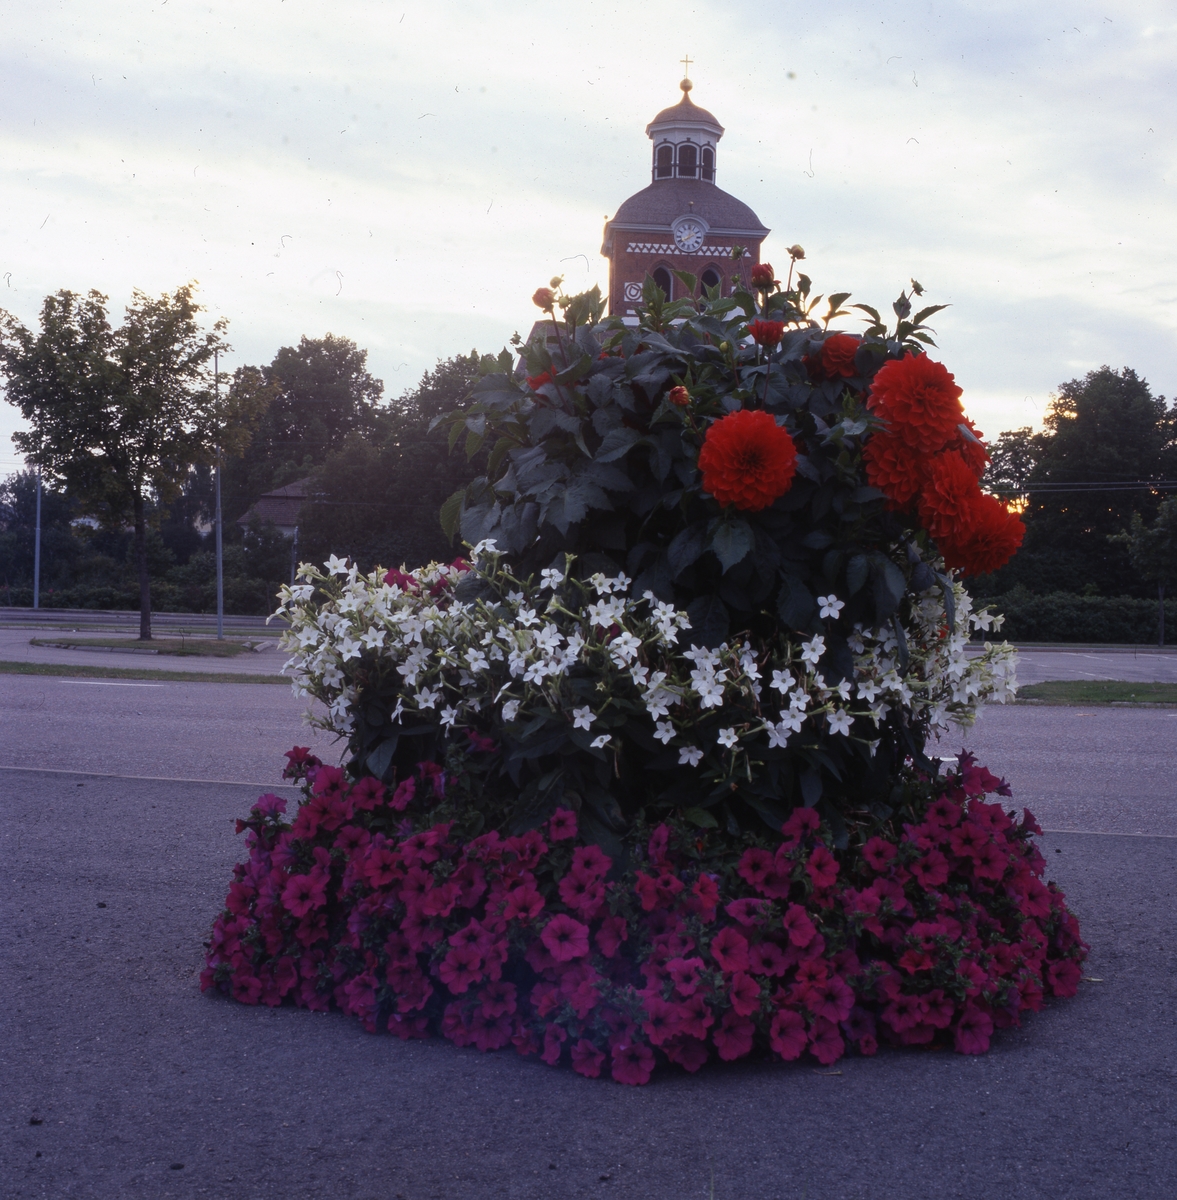 Praktfull blomsterurna med kyrkan i bakgrunden, Bollnäs 25 augusti 2001.